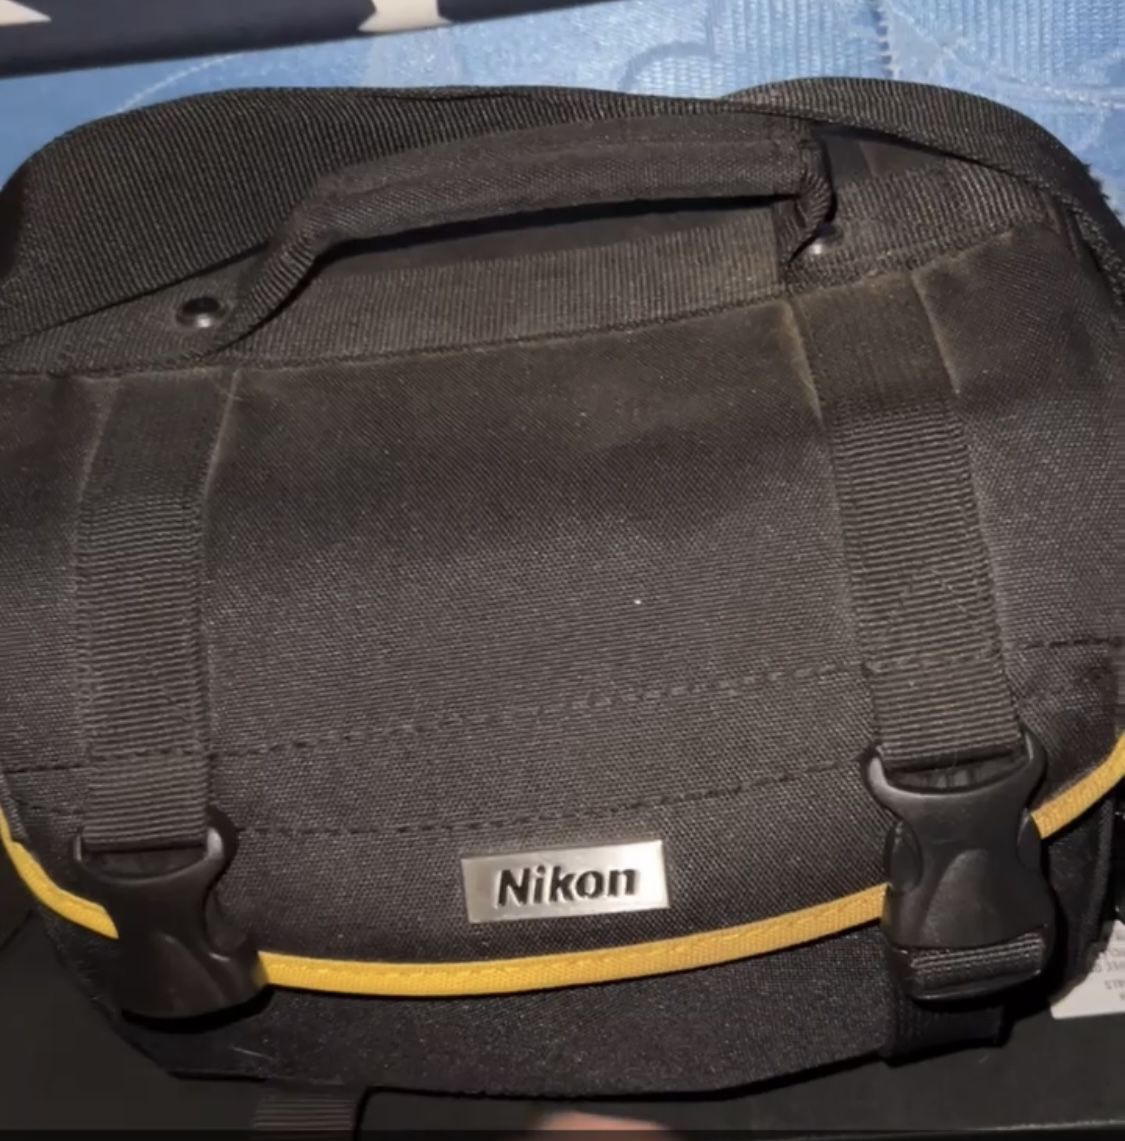 Nikon D40 Camera With AF-S 18-55mm Lenses